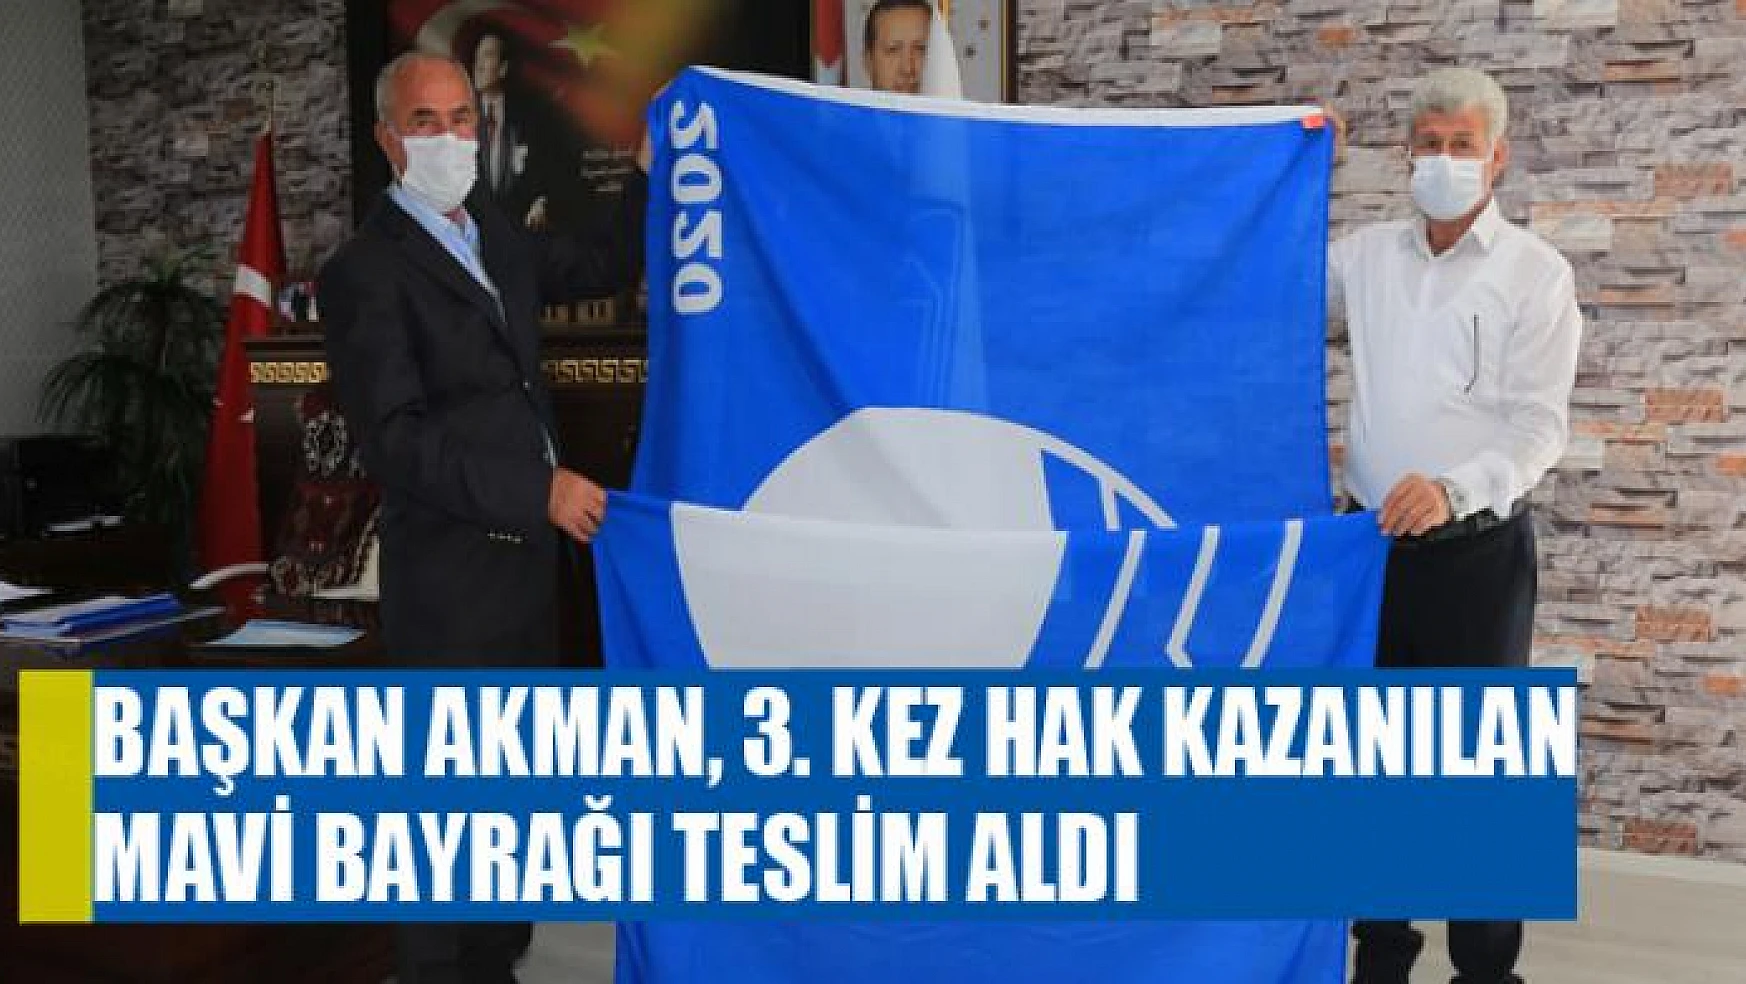 Başkan Akman, 3. kez hak kazanılan mavi bayrağı teslim aldı